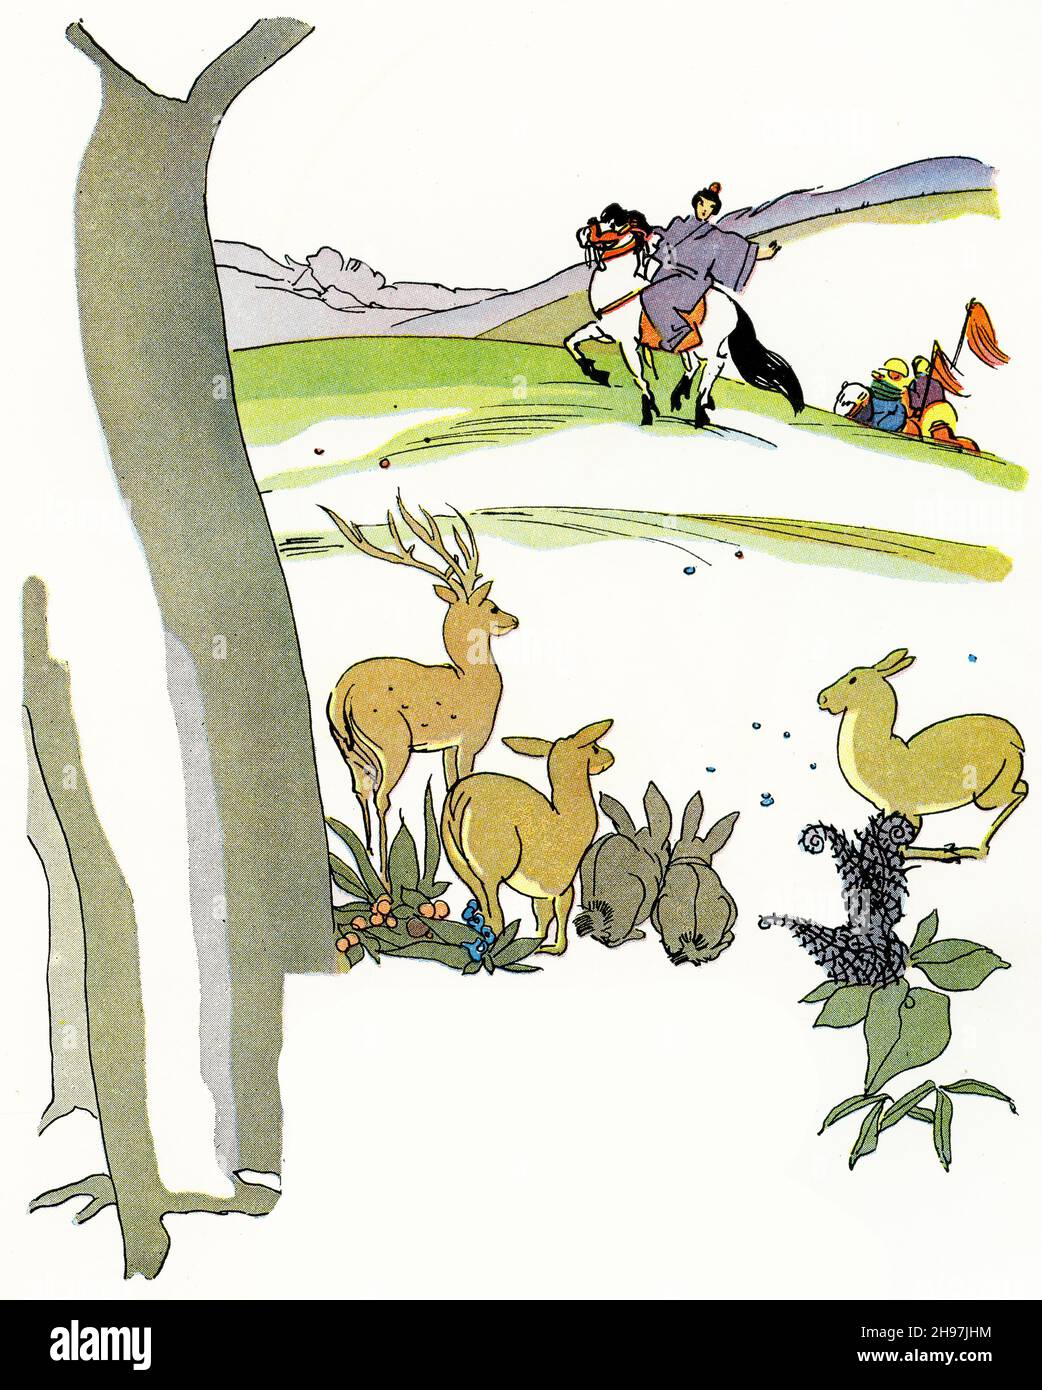 Illustration pittoresque de la vie traditionnelle au Japon, avec des animaux de jeu observant le prince lors d'une expédition de chasse ; publié vers 1928 Banque D'Images